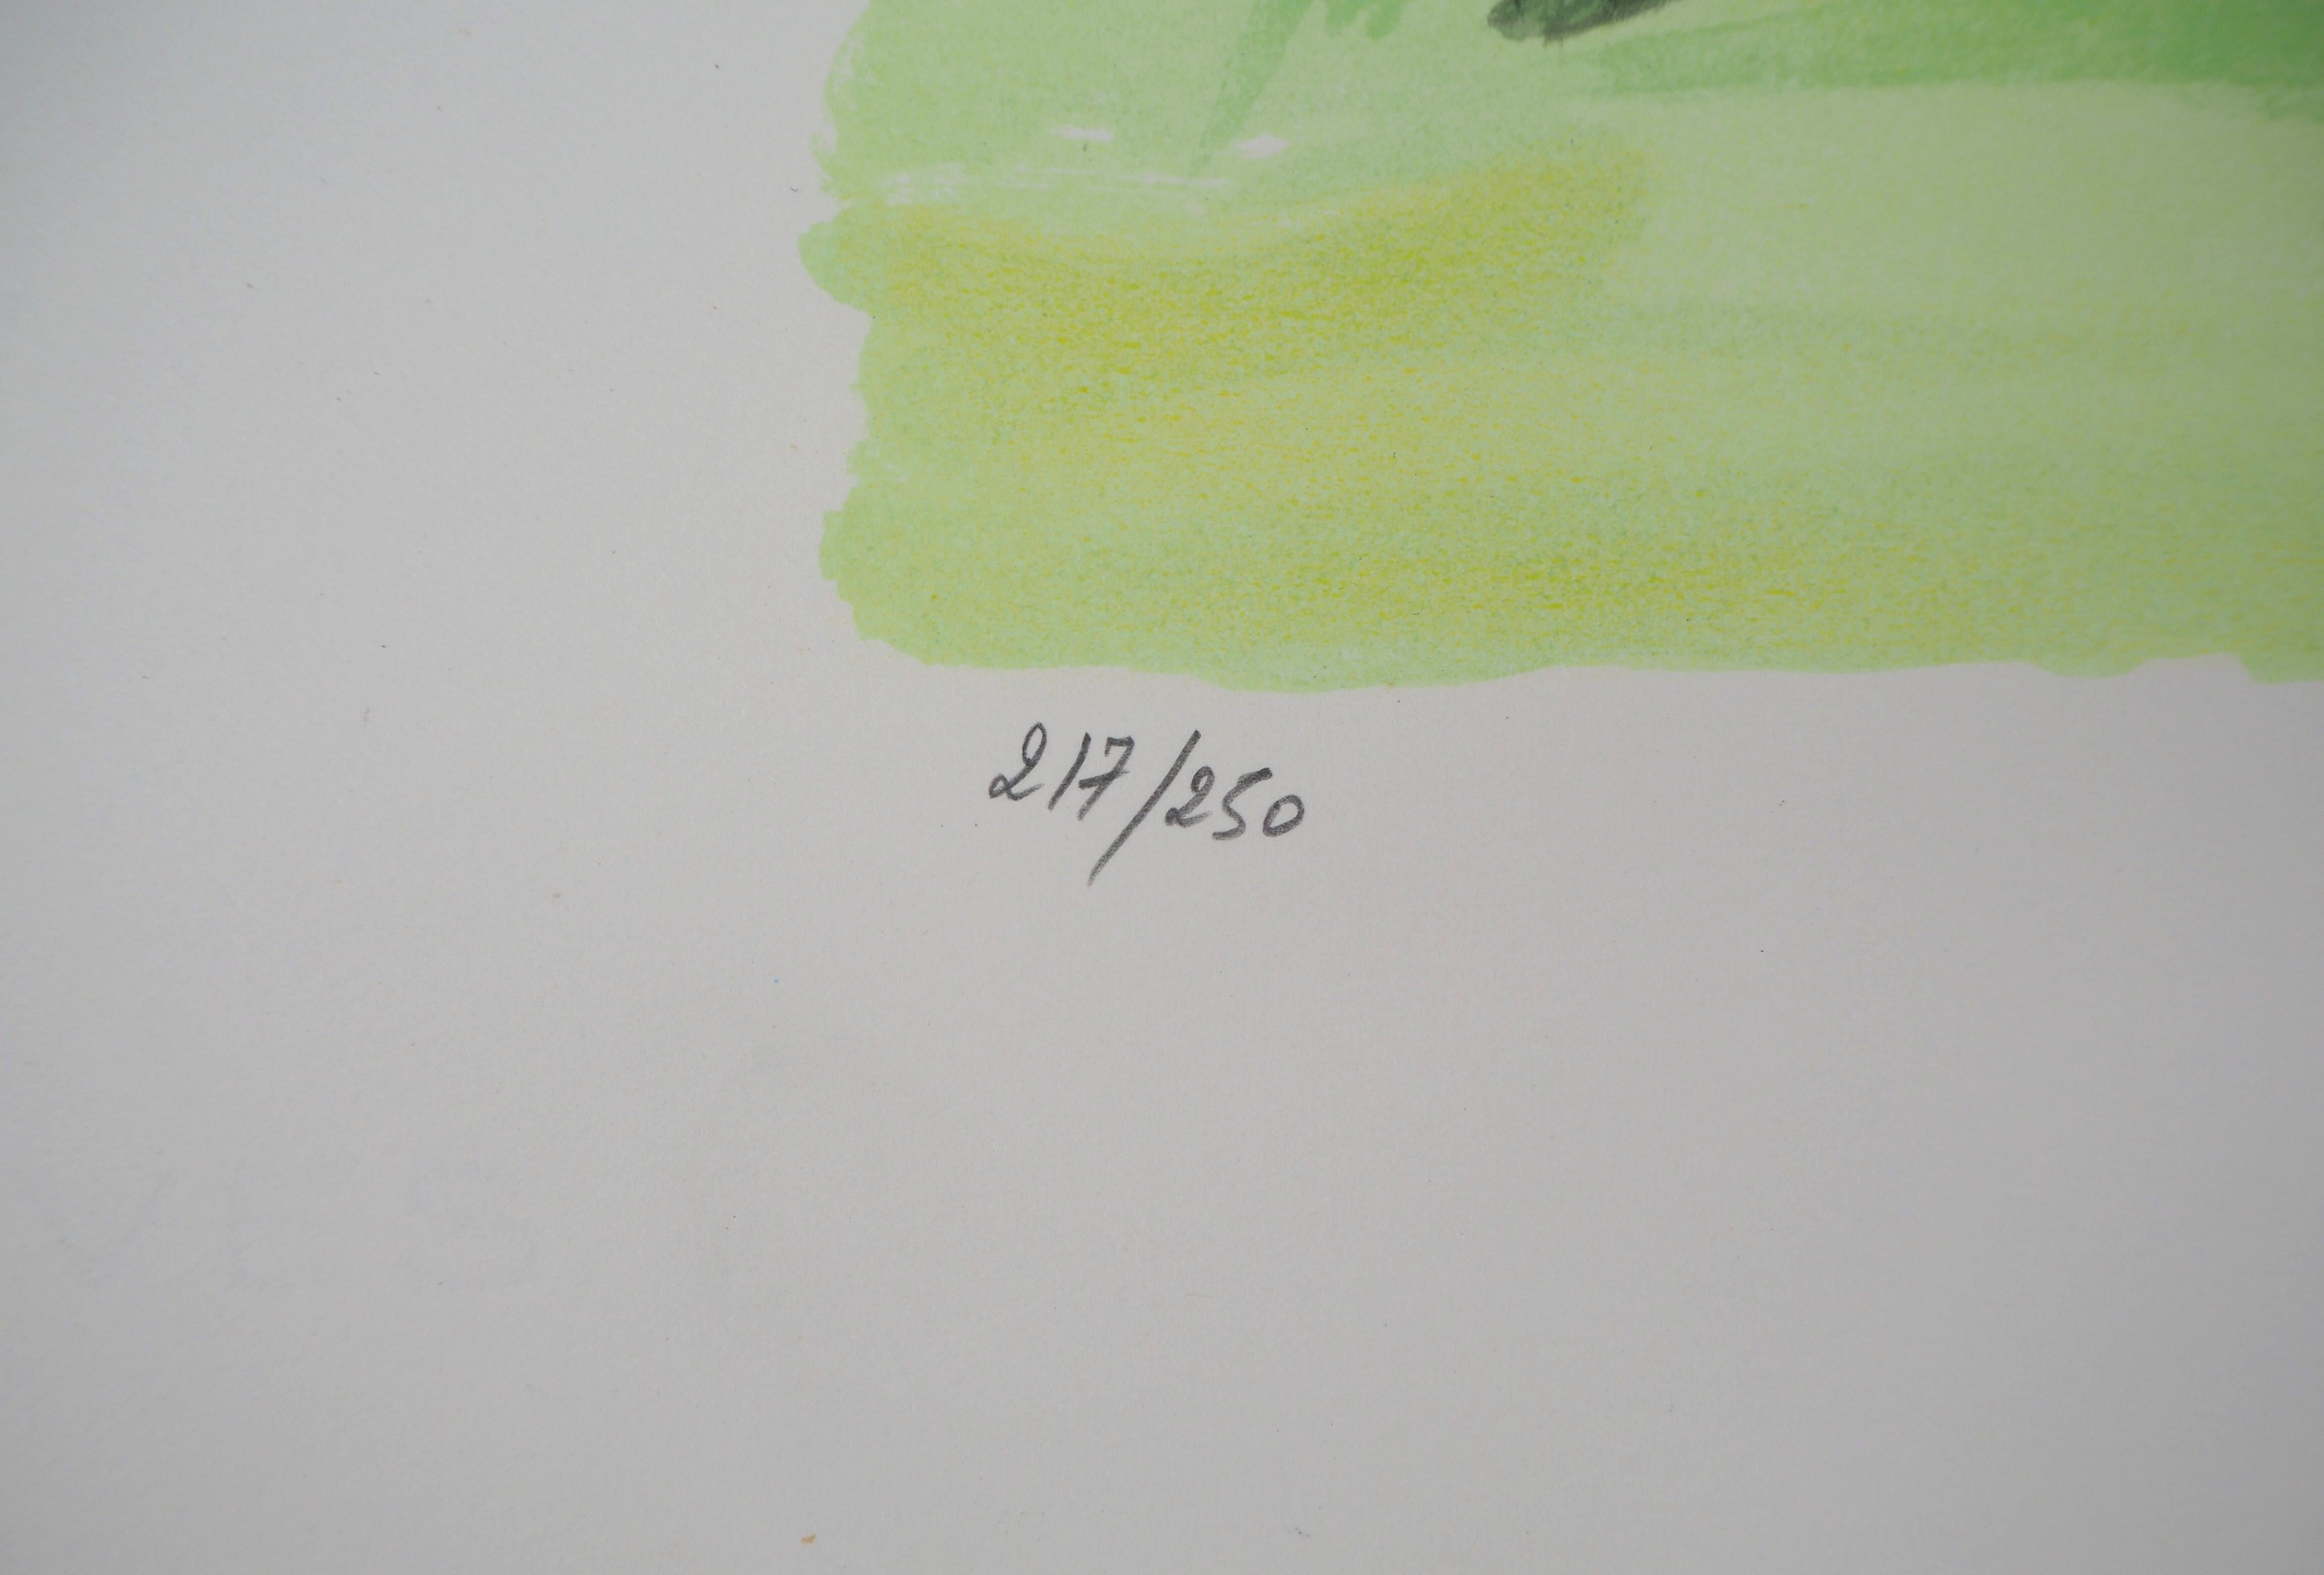 Yves Brayer (1907-1990)
Avant la course au trot

Lithographie originale, vers 1973
Signé au crayon par l'artiste
Numéroté /250 exemplaires
Taille 50 x 65 cm, sur Vélin d'Arches

Information : Extrait du portfolio 